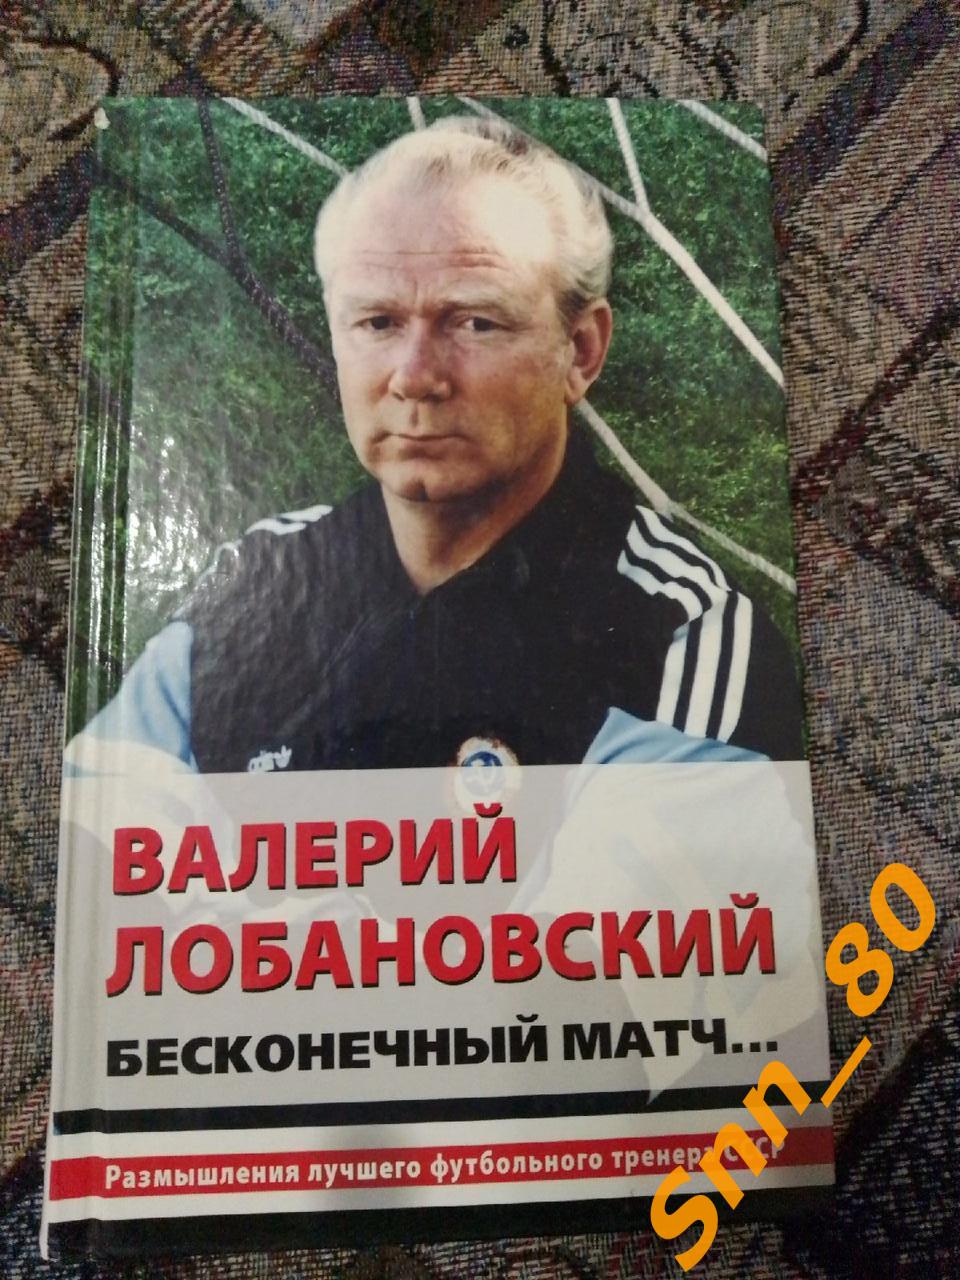 6 Валерий Лобановский Бесконечный матч 2009 Москва Эксмо (31,8)